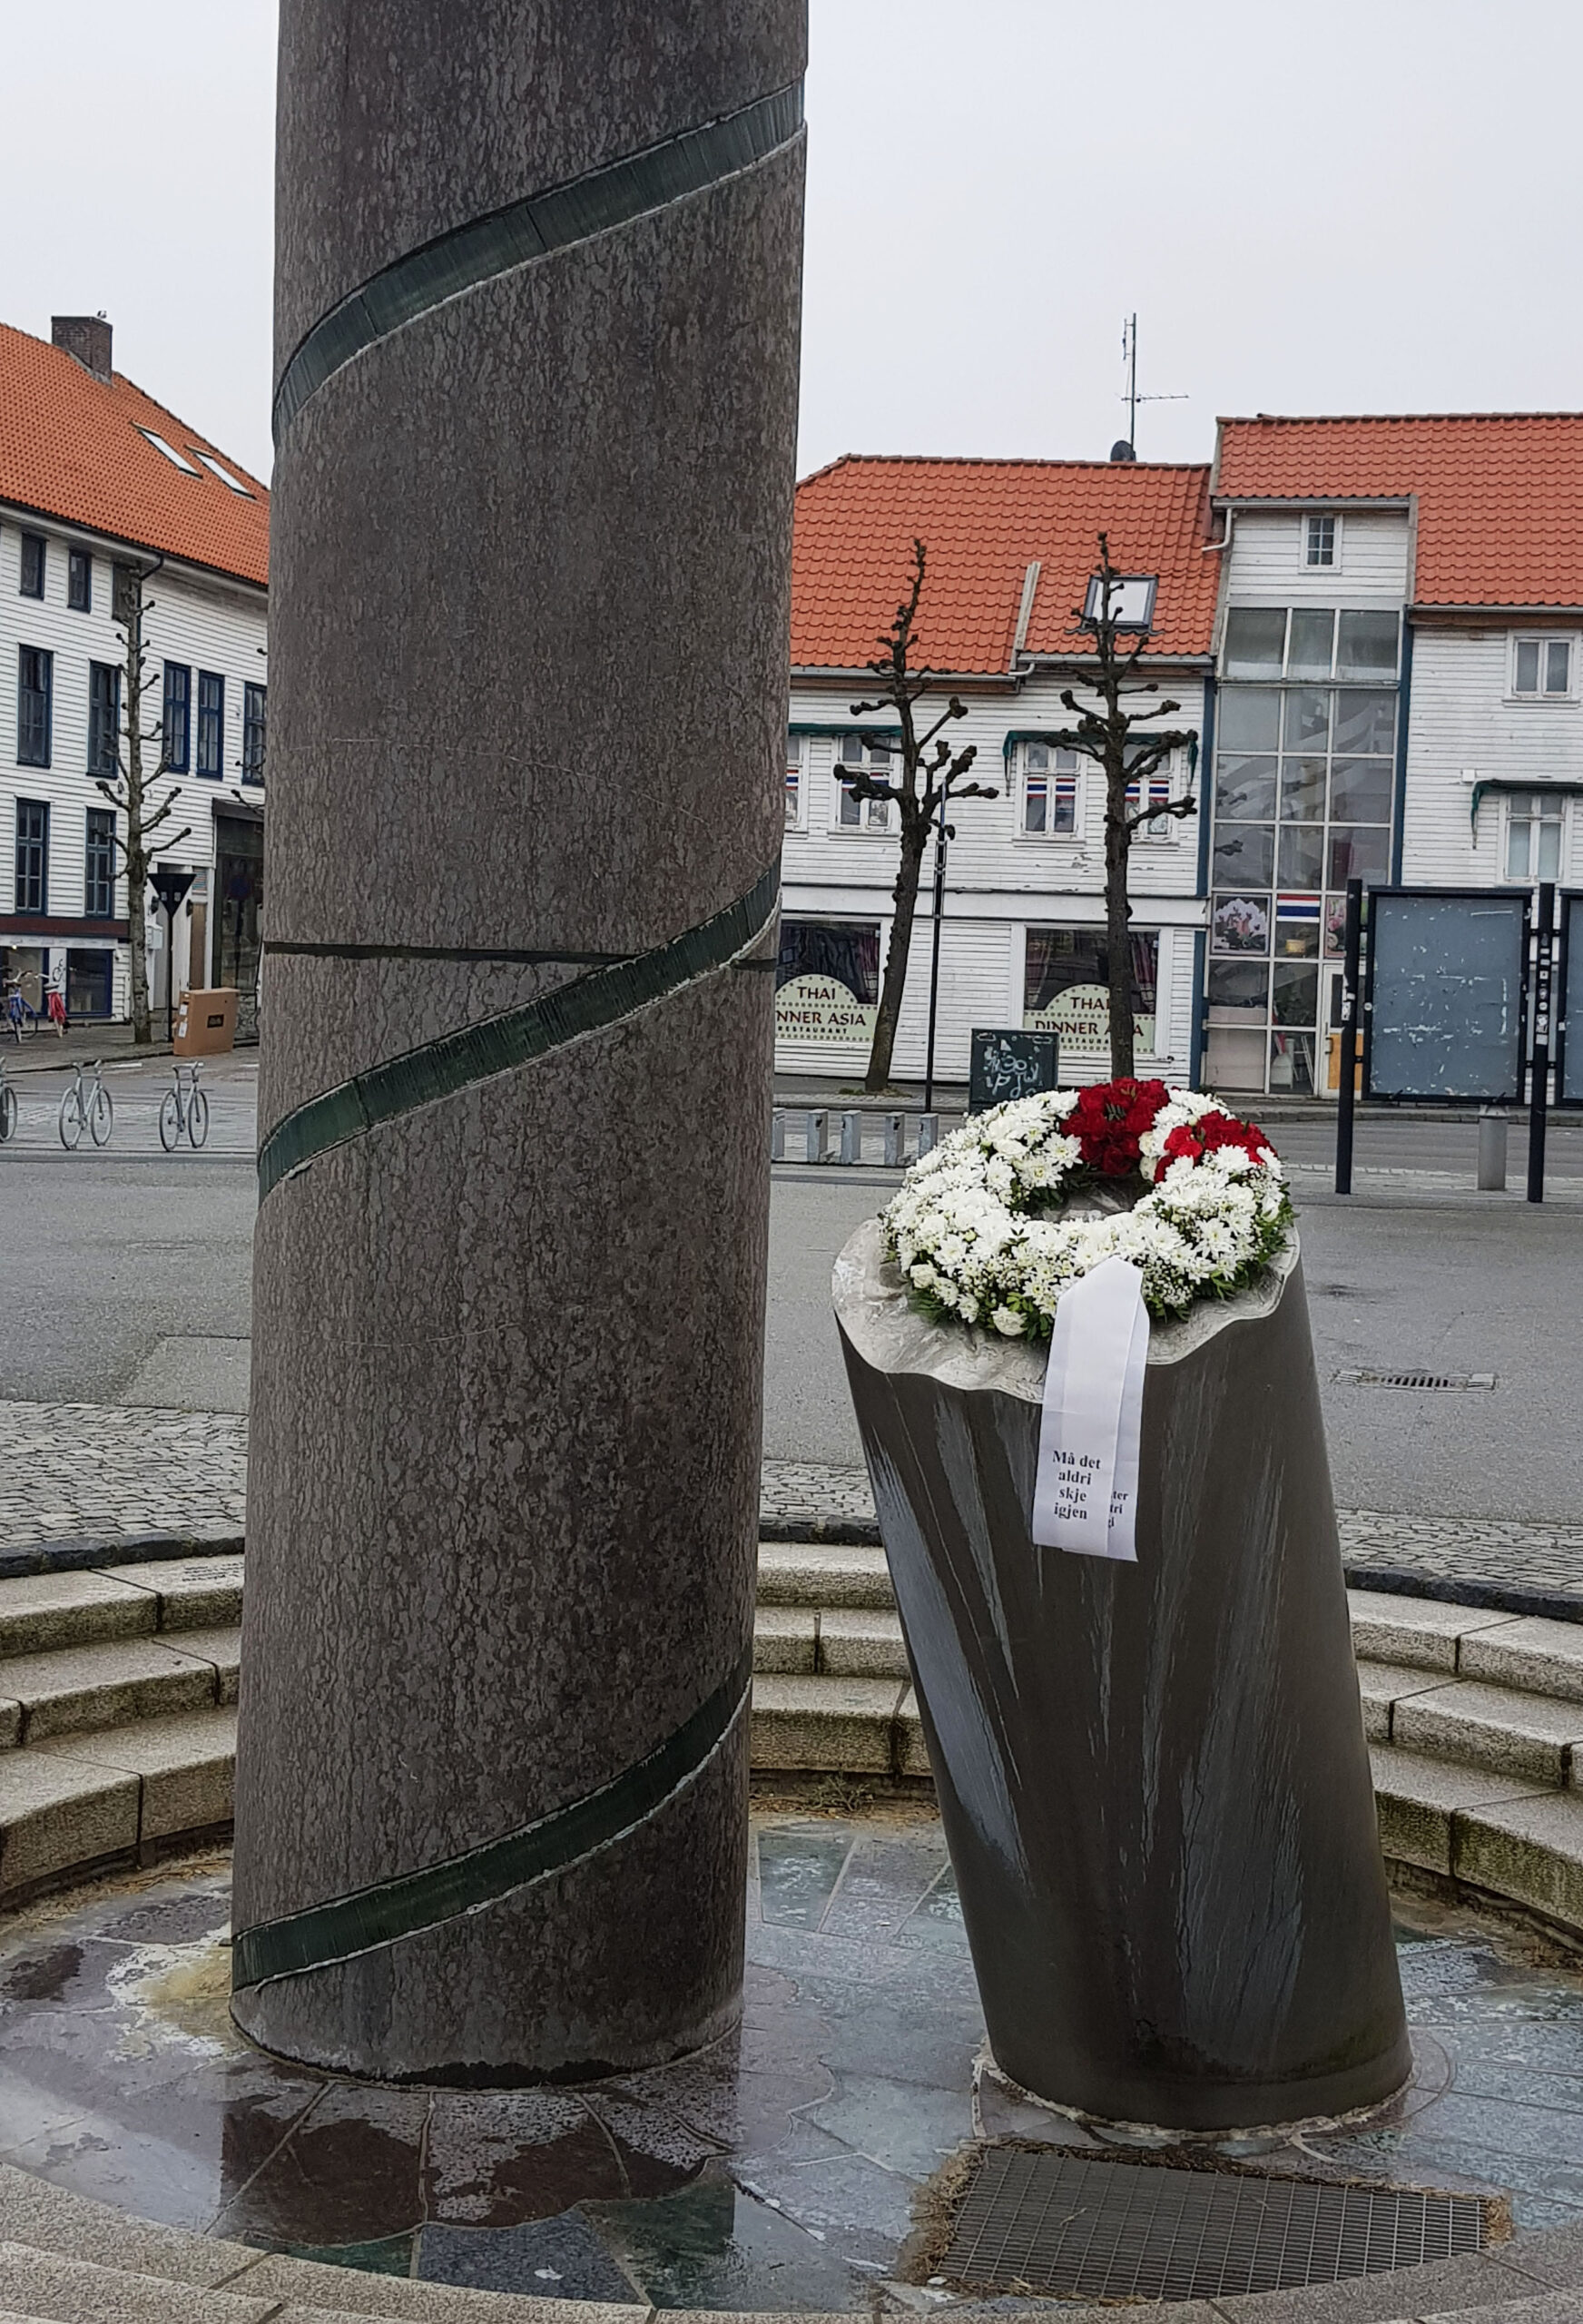 Forbundet la i dag ned krans til minne om Alexander Kielland-ulykken for førti år siden. Foto: Atle Espen Helgesen